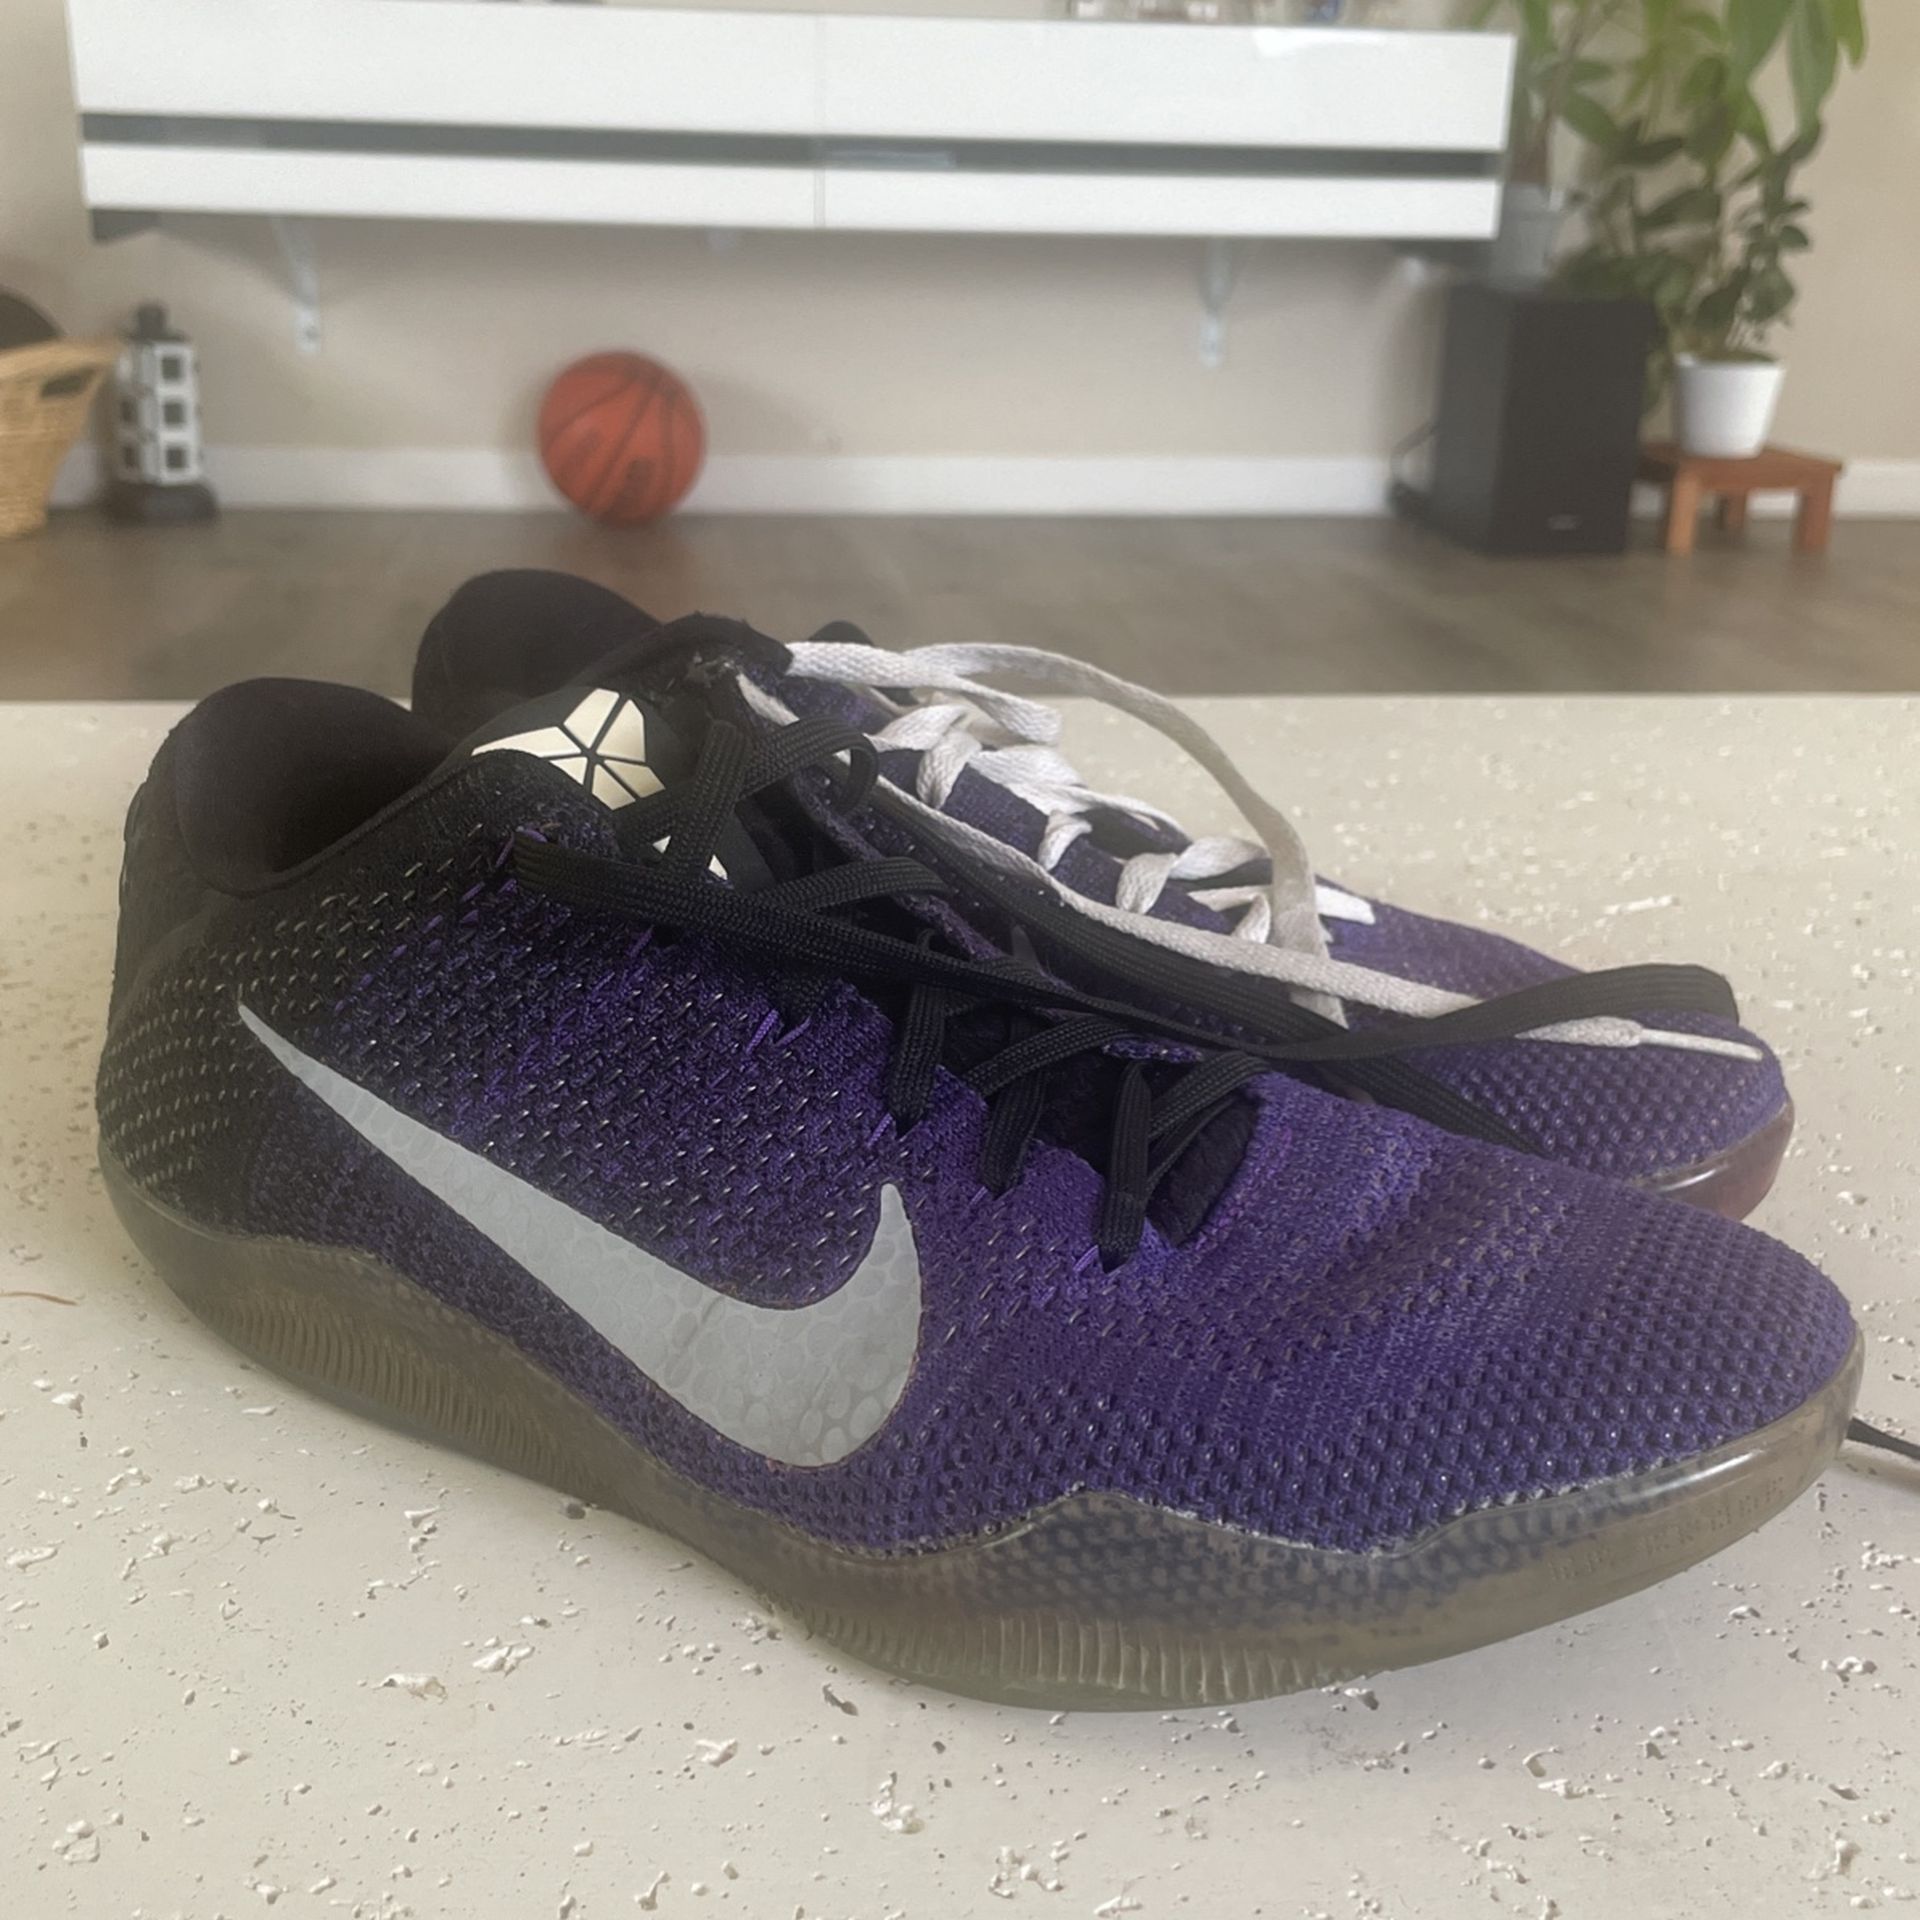 Nike Kobe 11 Elite Low “eulogy”